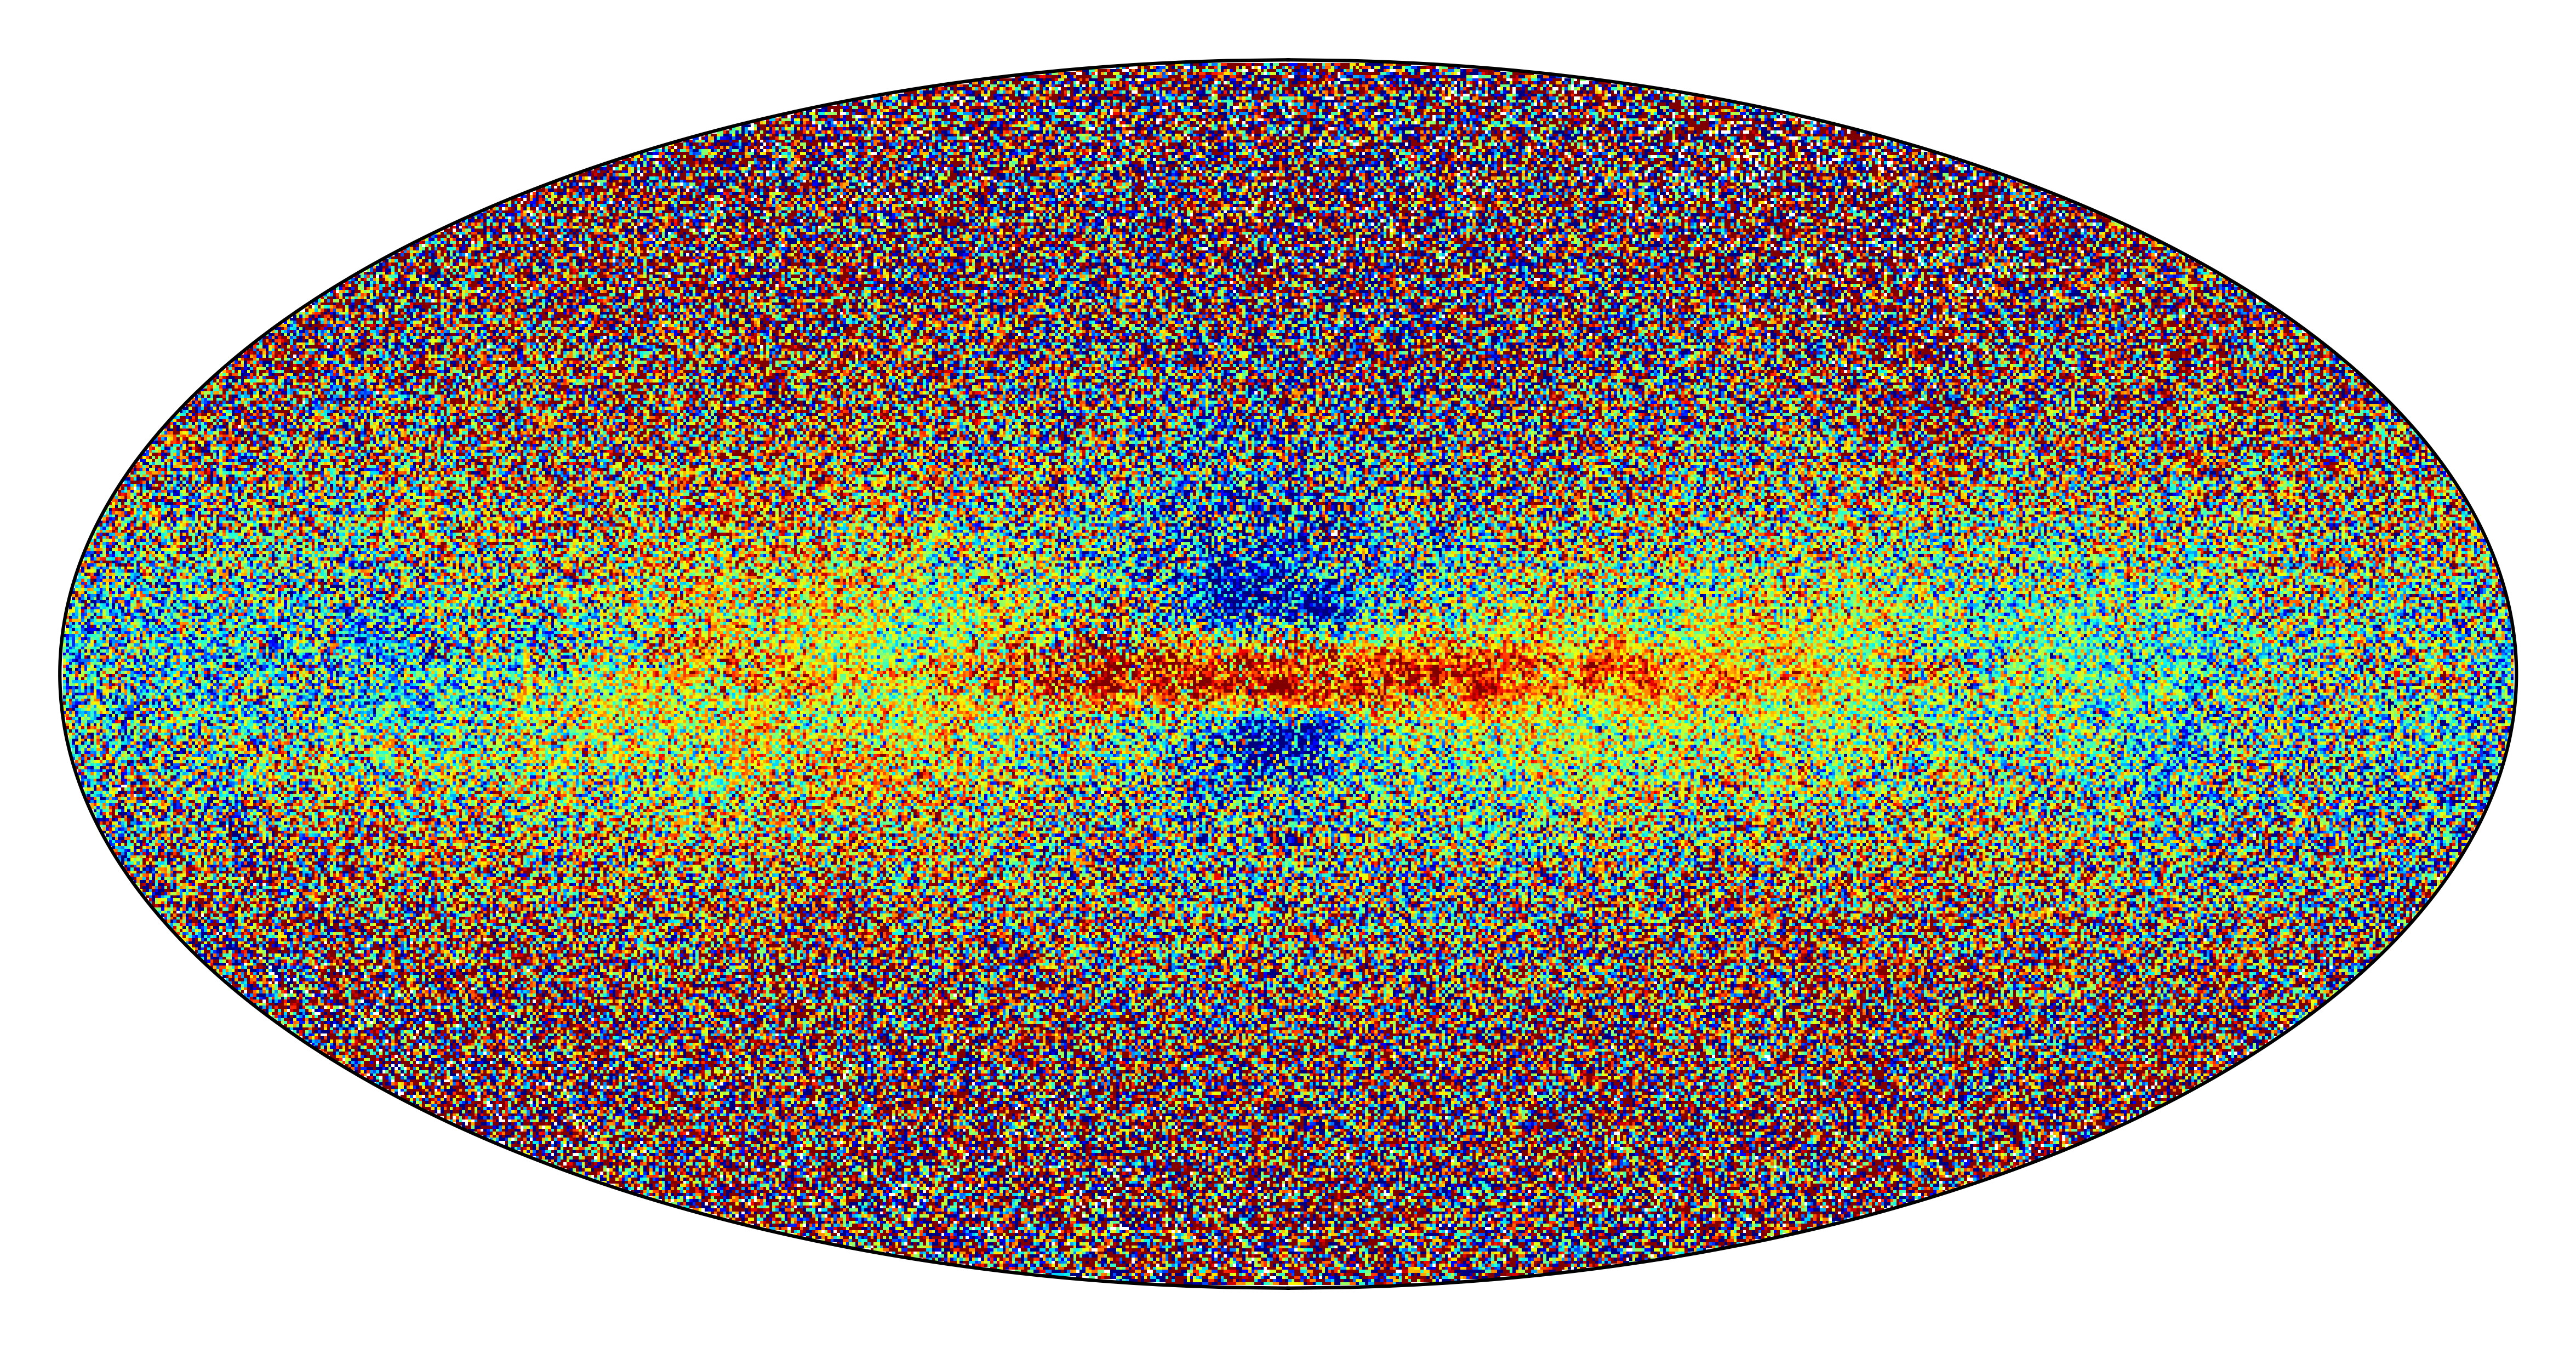  На этой цветной карте представлены данные о содержании тяжёлых элементов в более чем 6 миллионах звёзд в пределах Млечного Пути. Звёзды красного, оранжевого и жёлтого цветов достаточно богаты тяжёлыми элементами, чтобы иметь планеты; звёзды зелёного и голубого цветов лишь изредка имеют планеты, а звёзды голубого и фиолетового цветов не имеют вокруг себя планет. Обратите внимание, что центральная плоскость галактического диска, простирающаяся до самого галактического ядра, потенциально пригодна для обитания и там есть каменистые планеты.